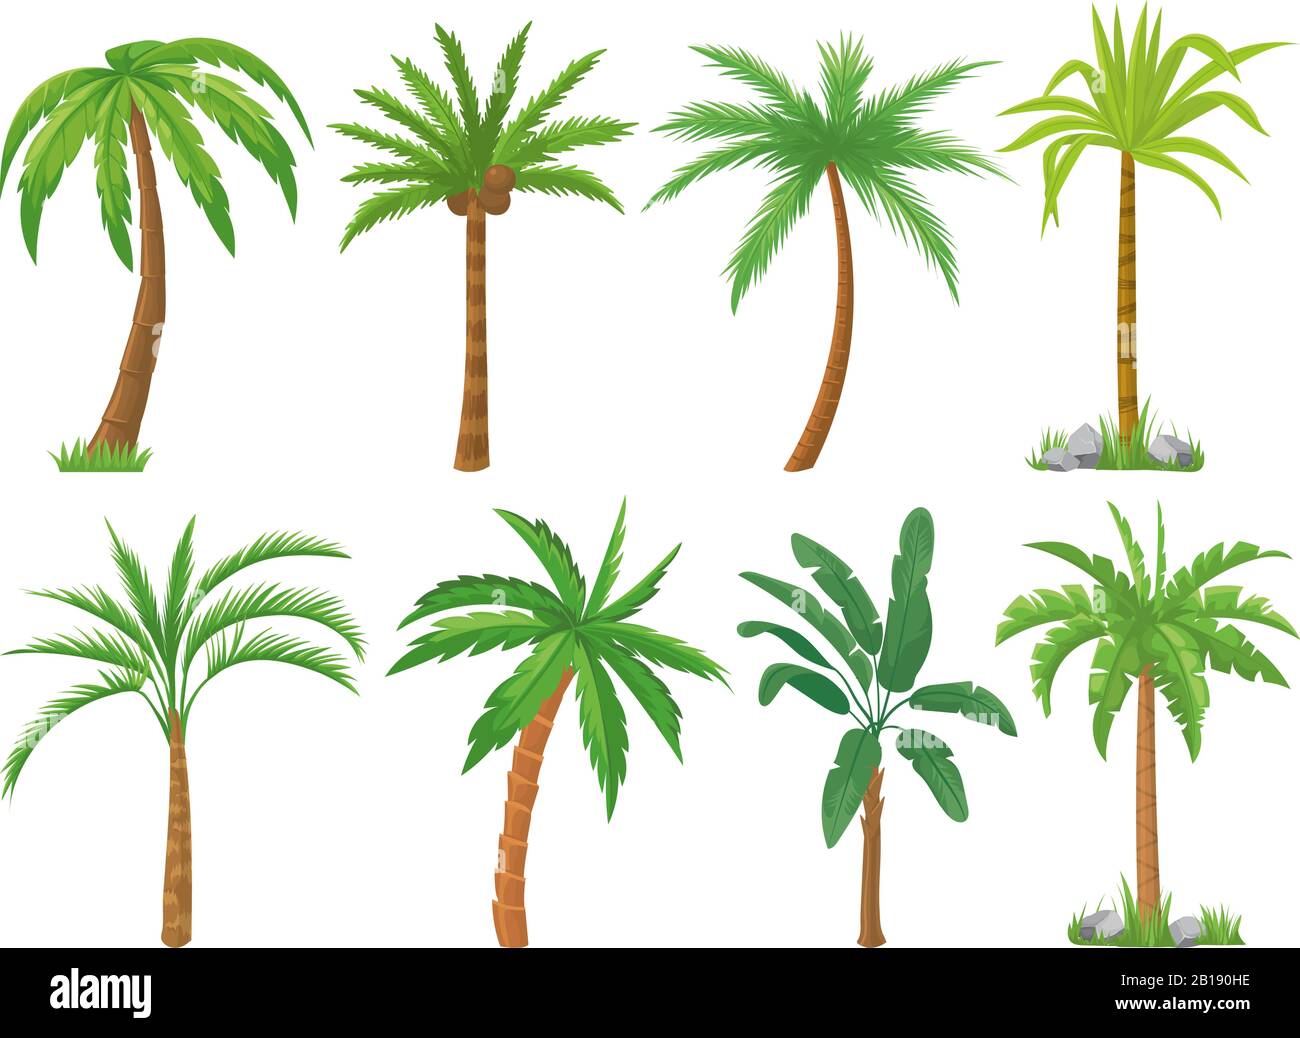 Alberi di palma. Foglie verdi di albero tropicale, palme da spiaggia e retrò california verde isolato vettore set Illustrazione Vettoriale